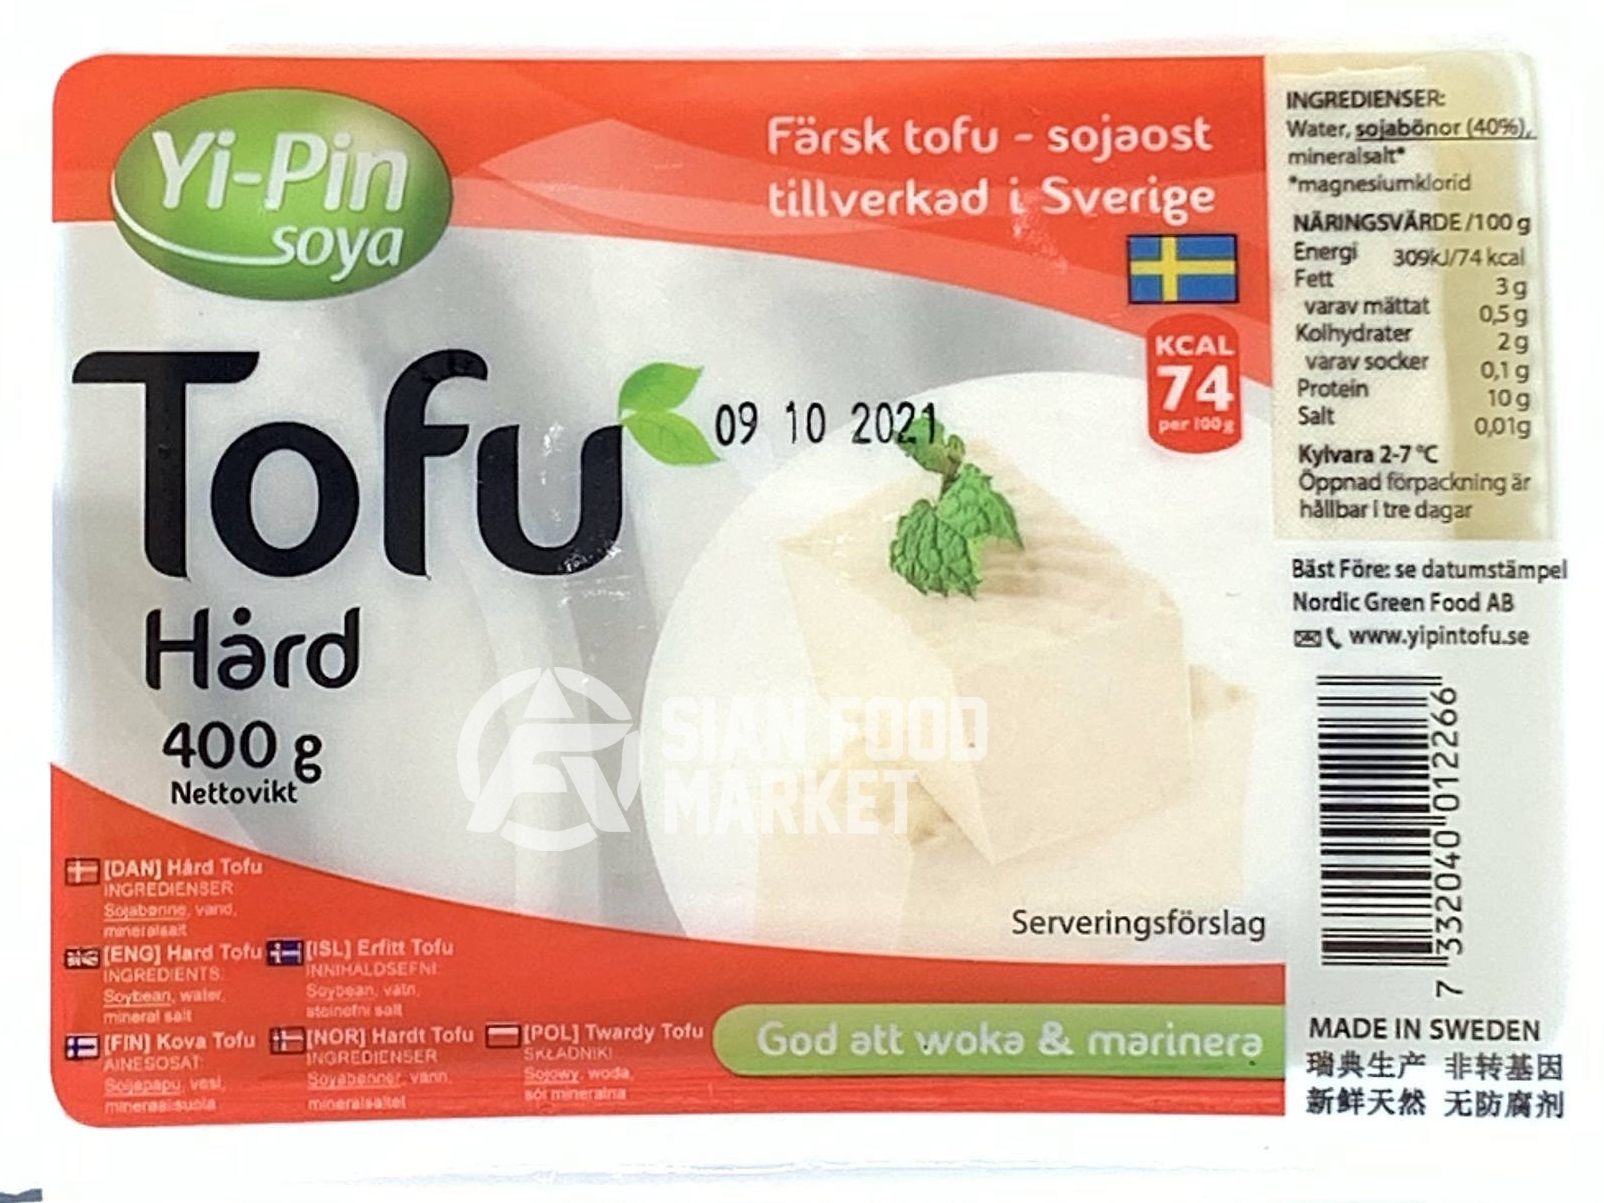 Tofu hård, Yi pin 400g